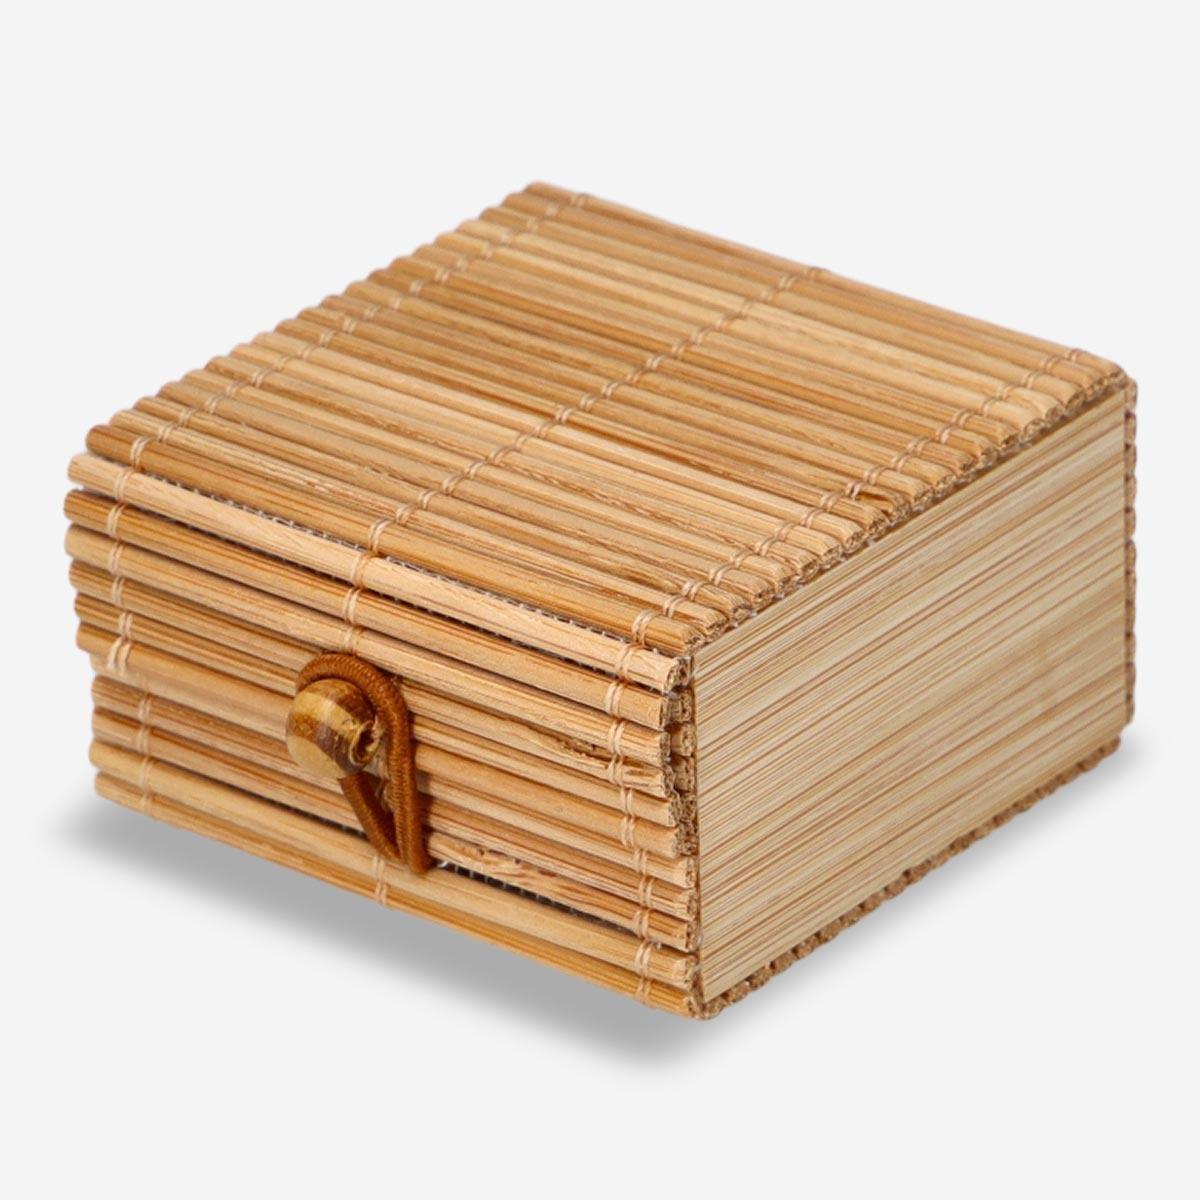 Wooden storage box. 6 cm